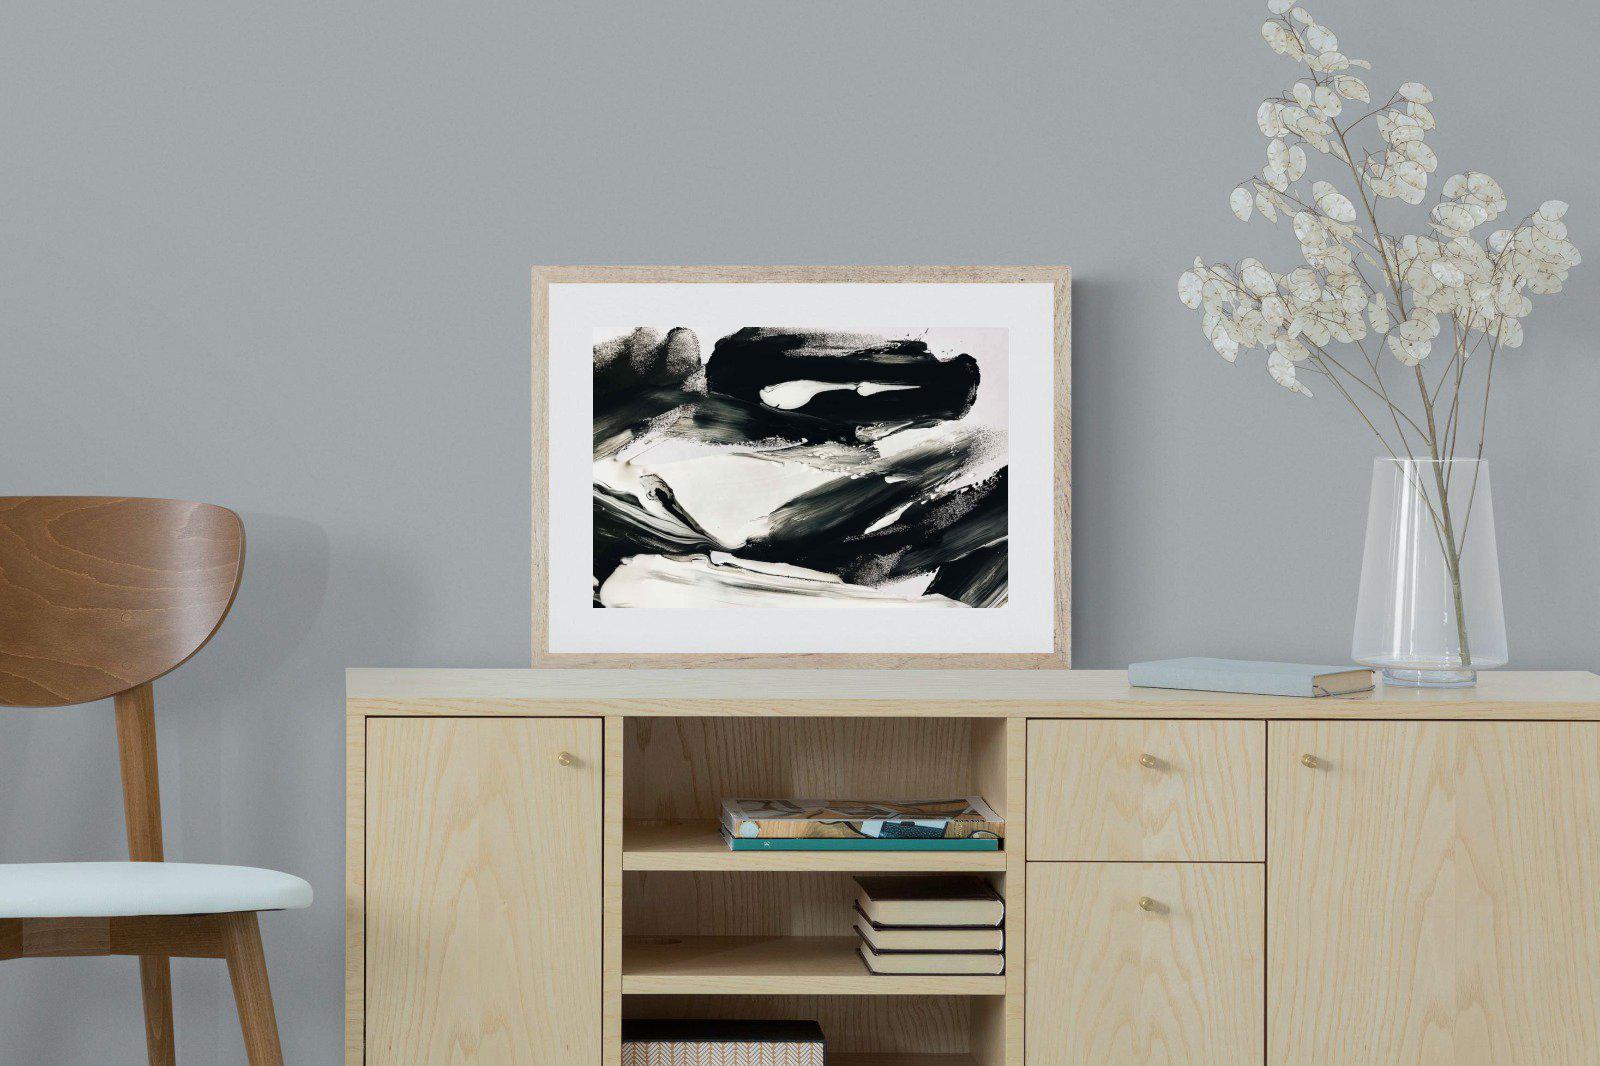 Disruption-Wall_Art-60 x 45cm-Framed Print-Wood-Pixalot